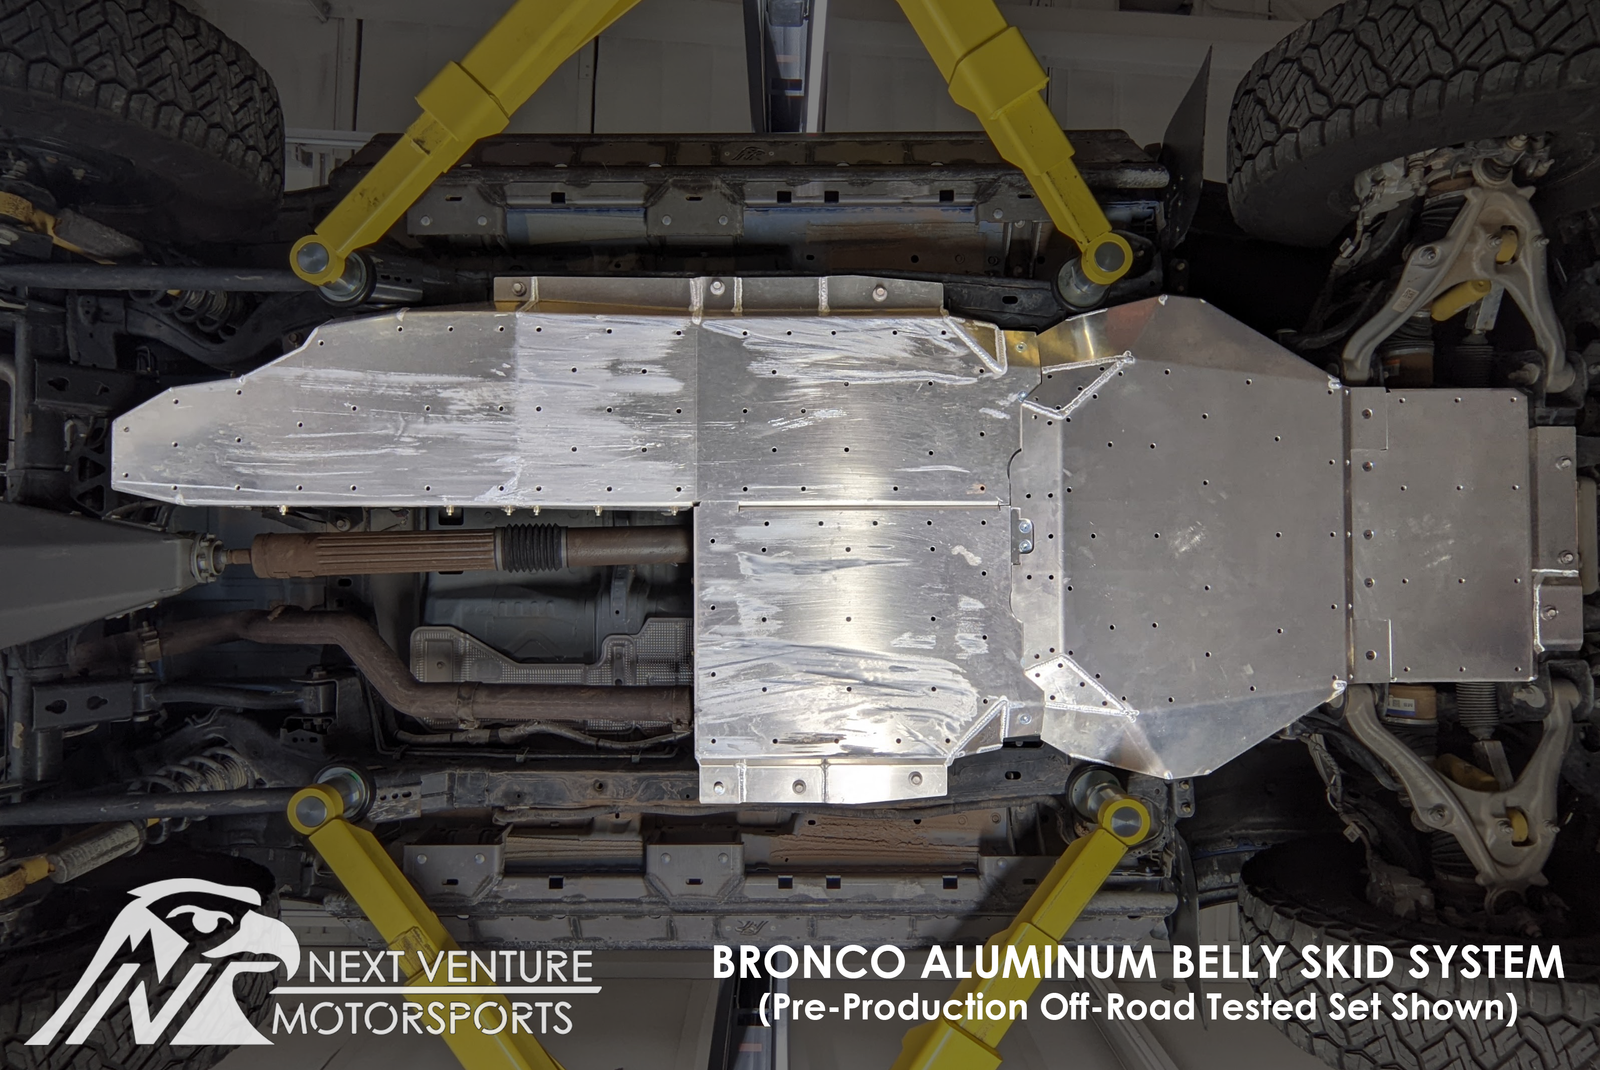 Bronco Aluminum Belly Skids